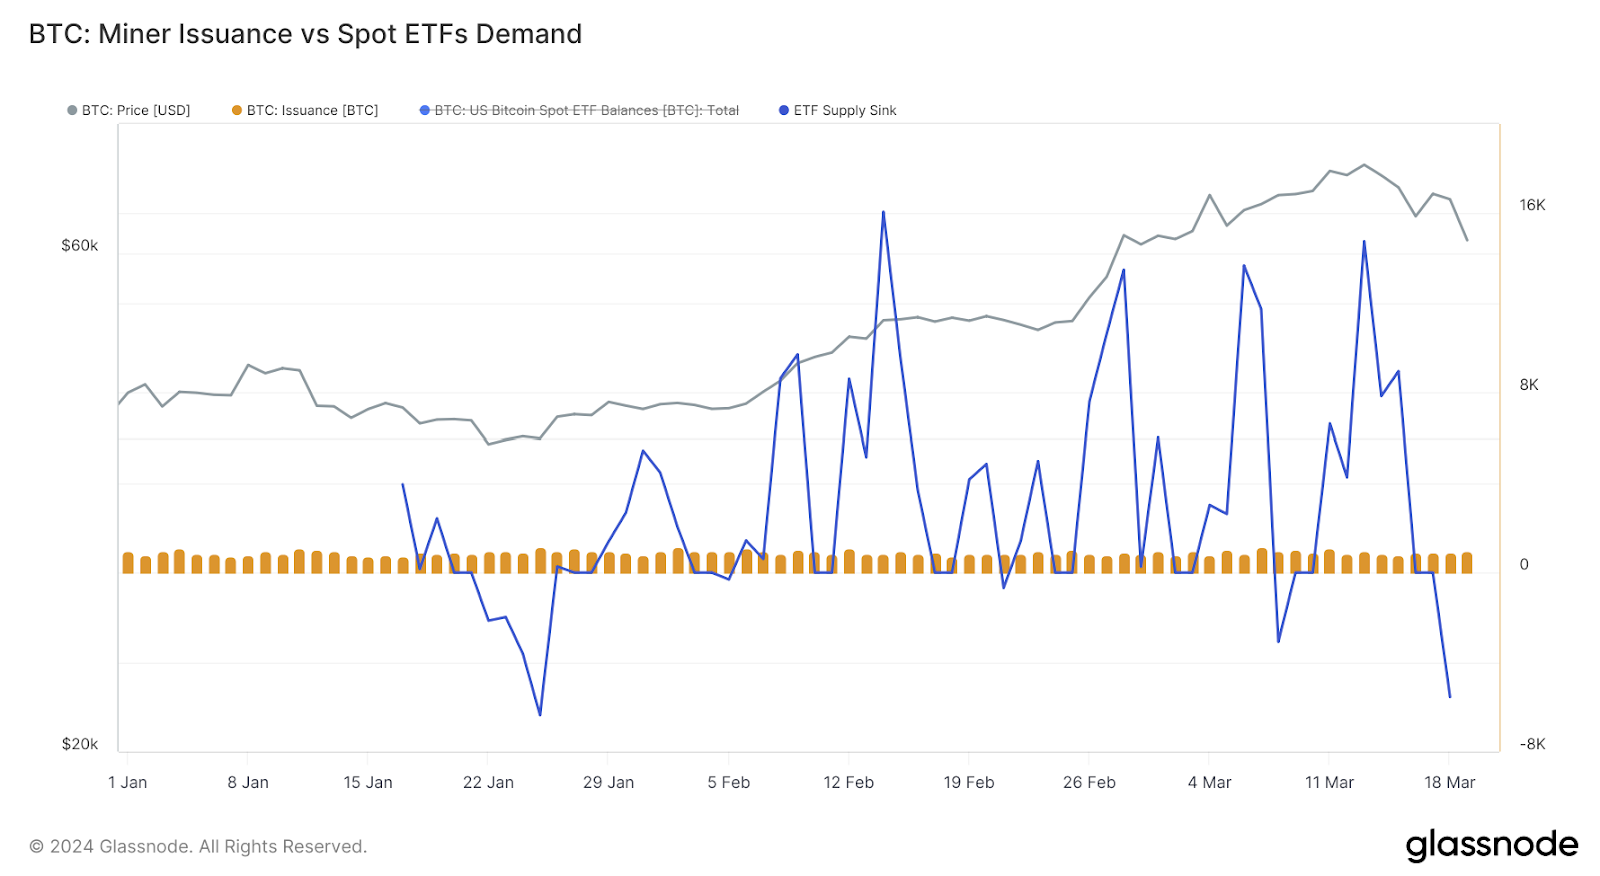 Un análisis comparativo de la emisión diaria de mineros de bitcoins frente a las adquisiciones de bitcoins del ETF ilustra un panorama de oferta cambiante a través de Glassnode